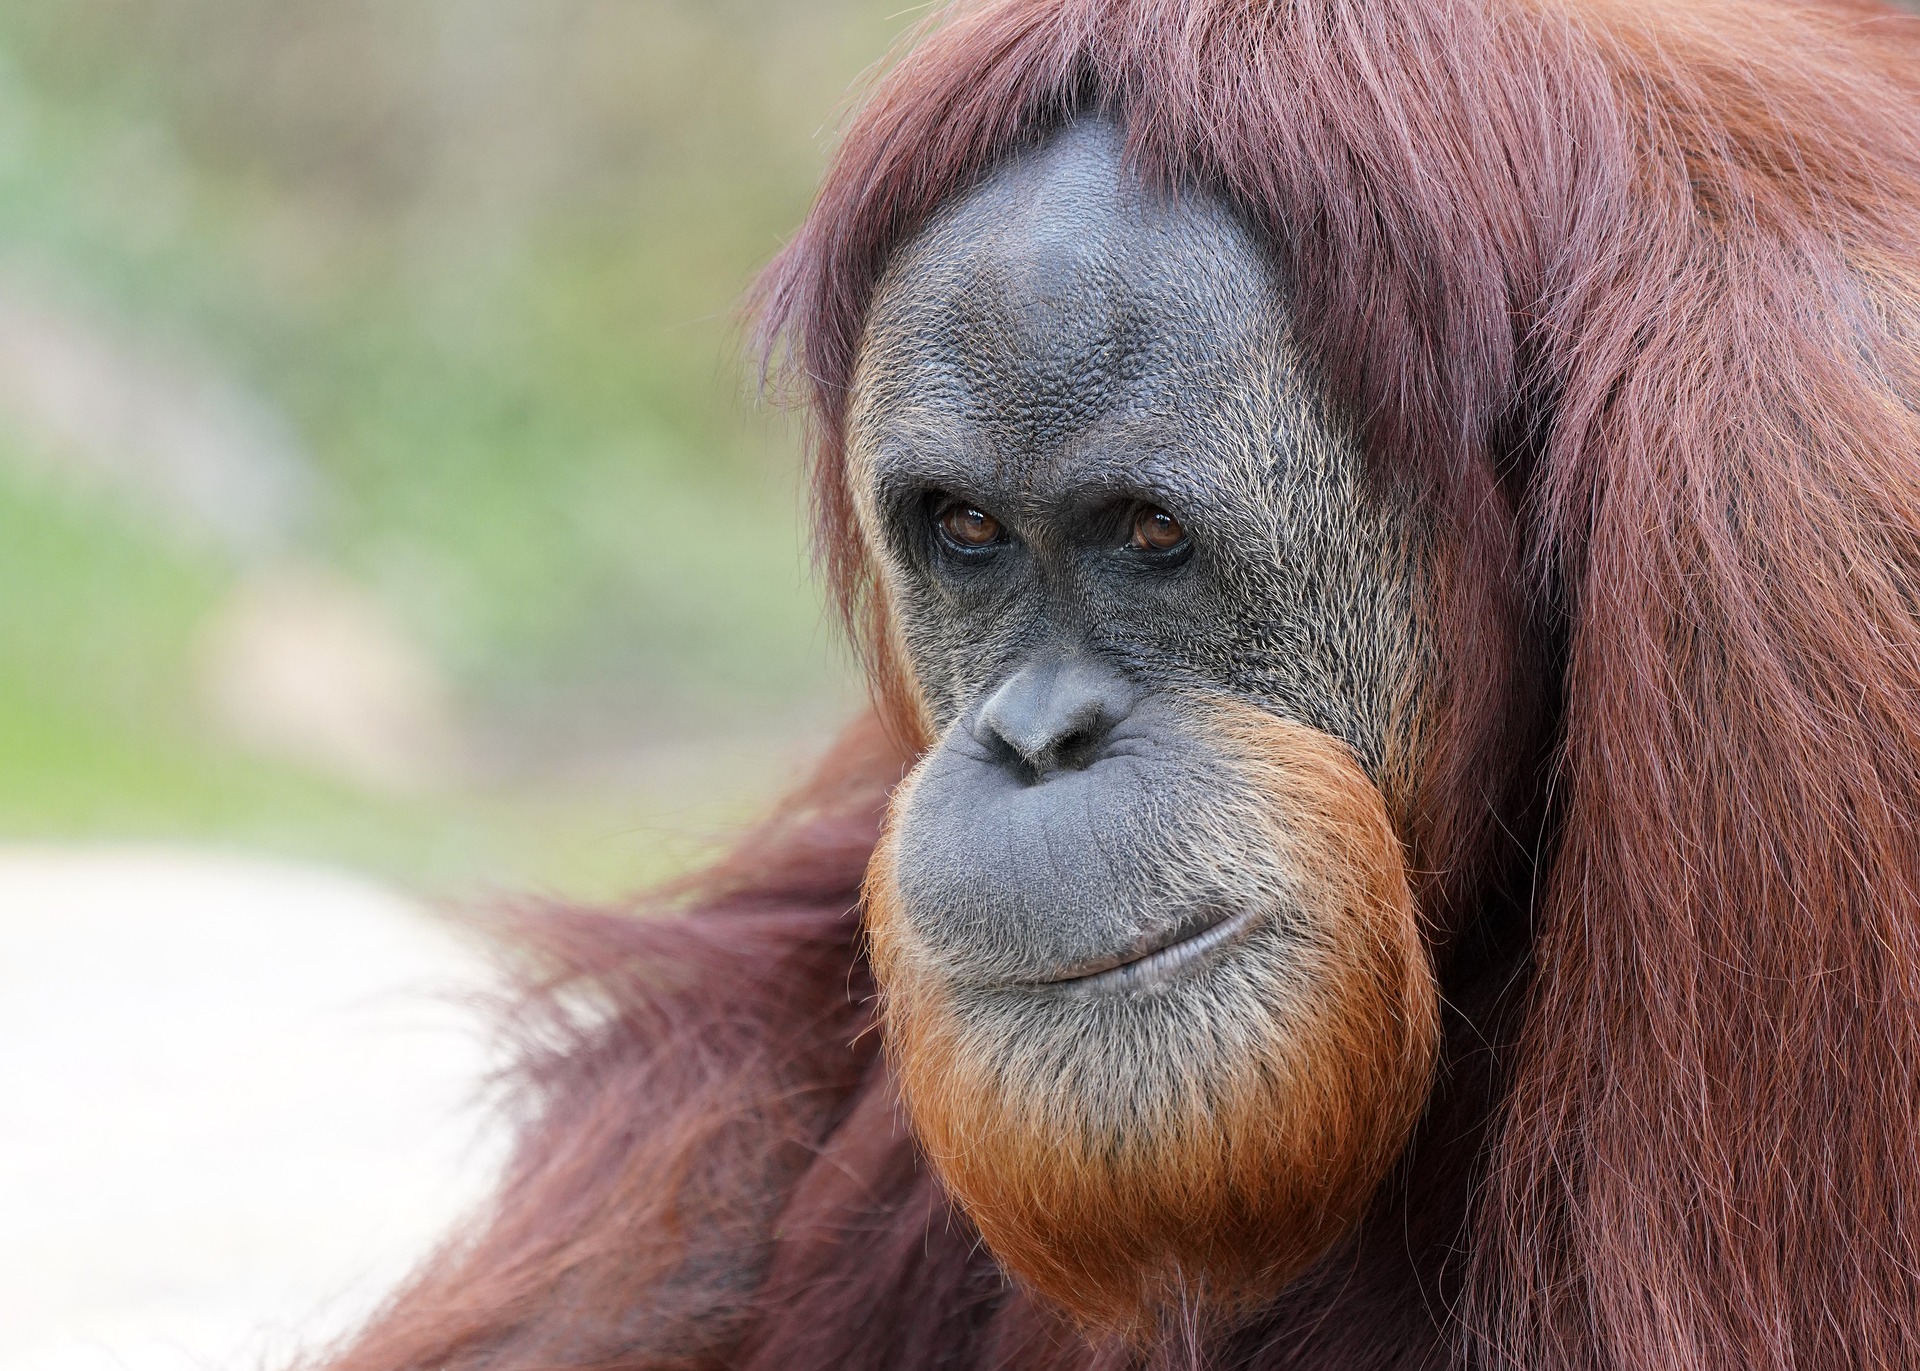 orang outan de borneo, animal, singe d'asie su sud est, danger d'extinction